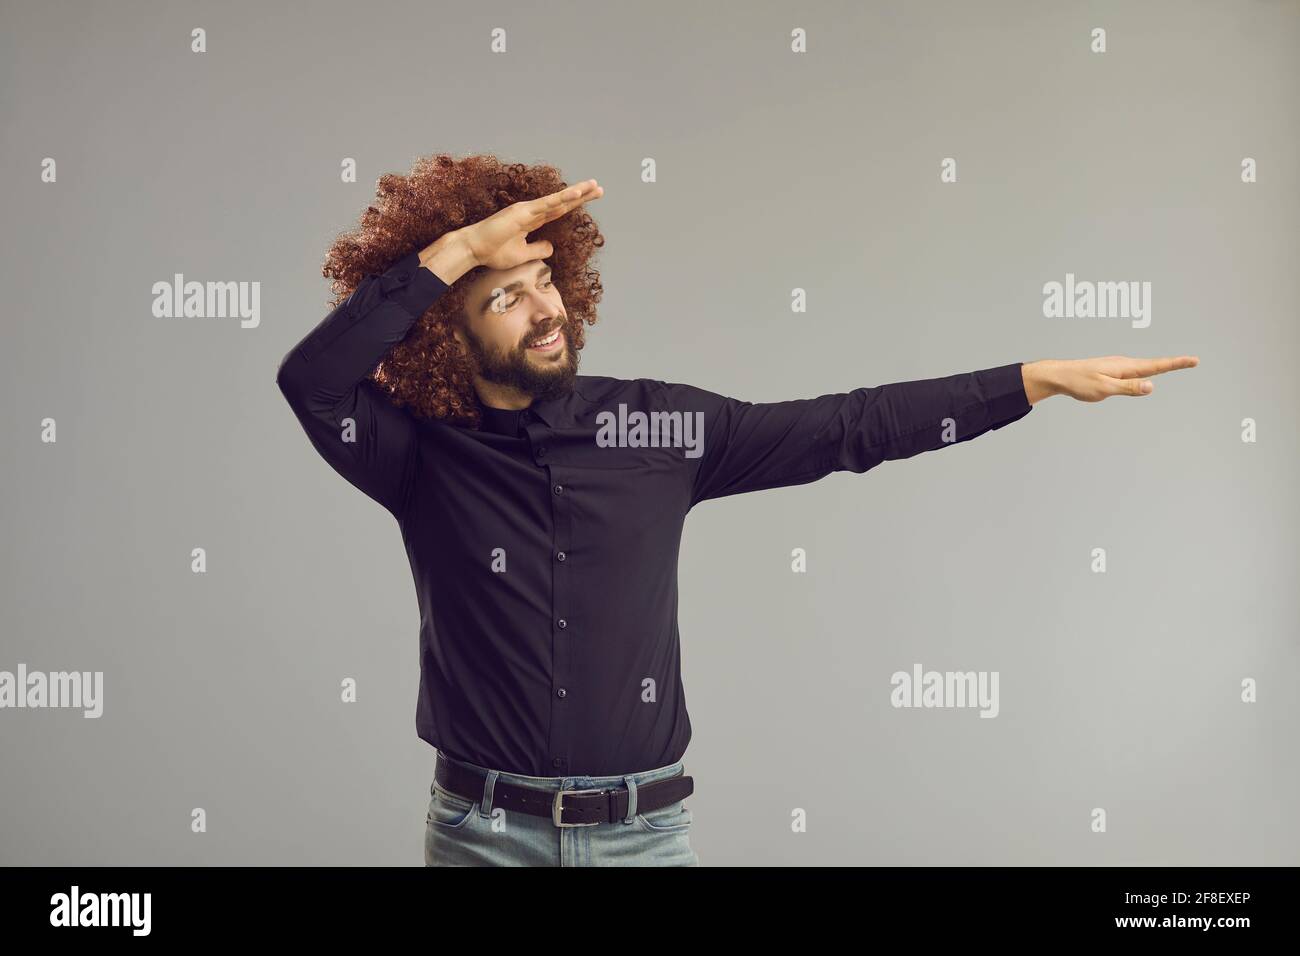 Lustiger Kerl in großer lockiger Perücke, der tuckende Tanzbewegung macht Im Studio mit grauem Hintergrund Stockfoto